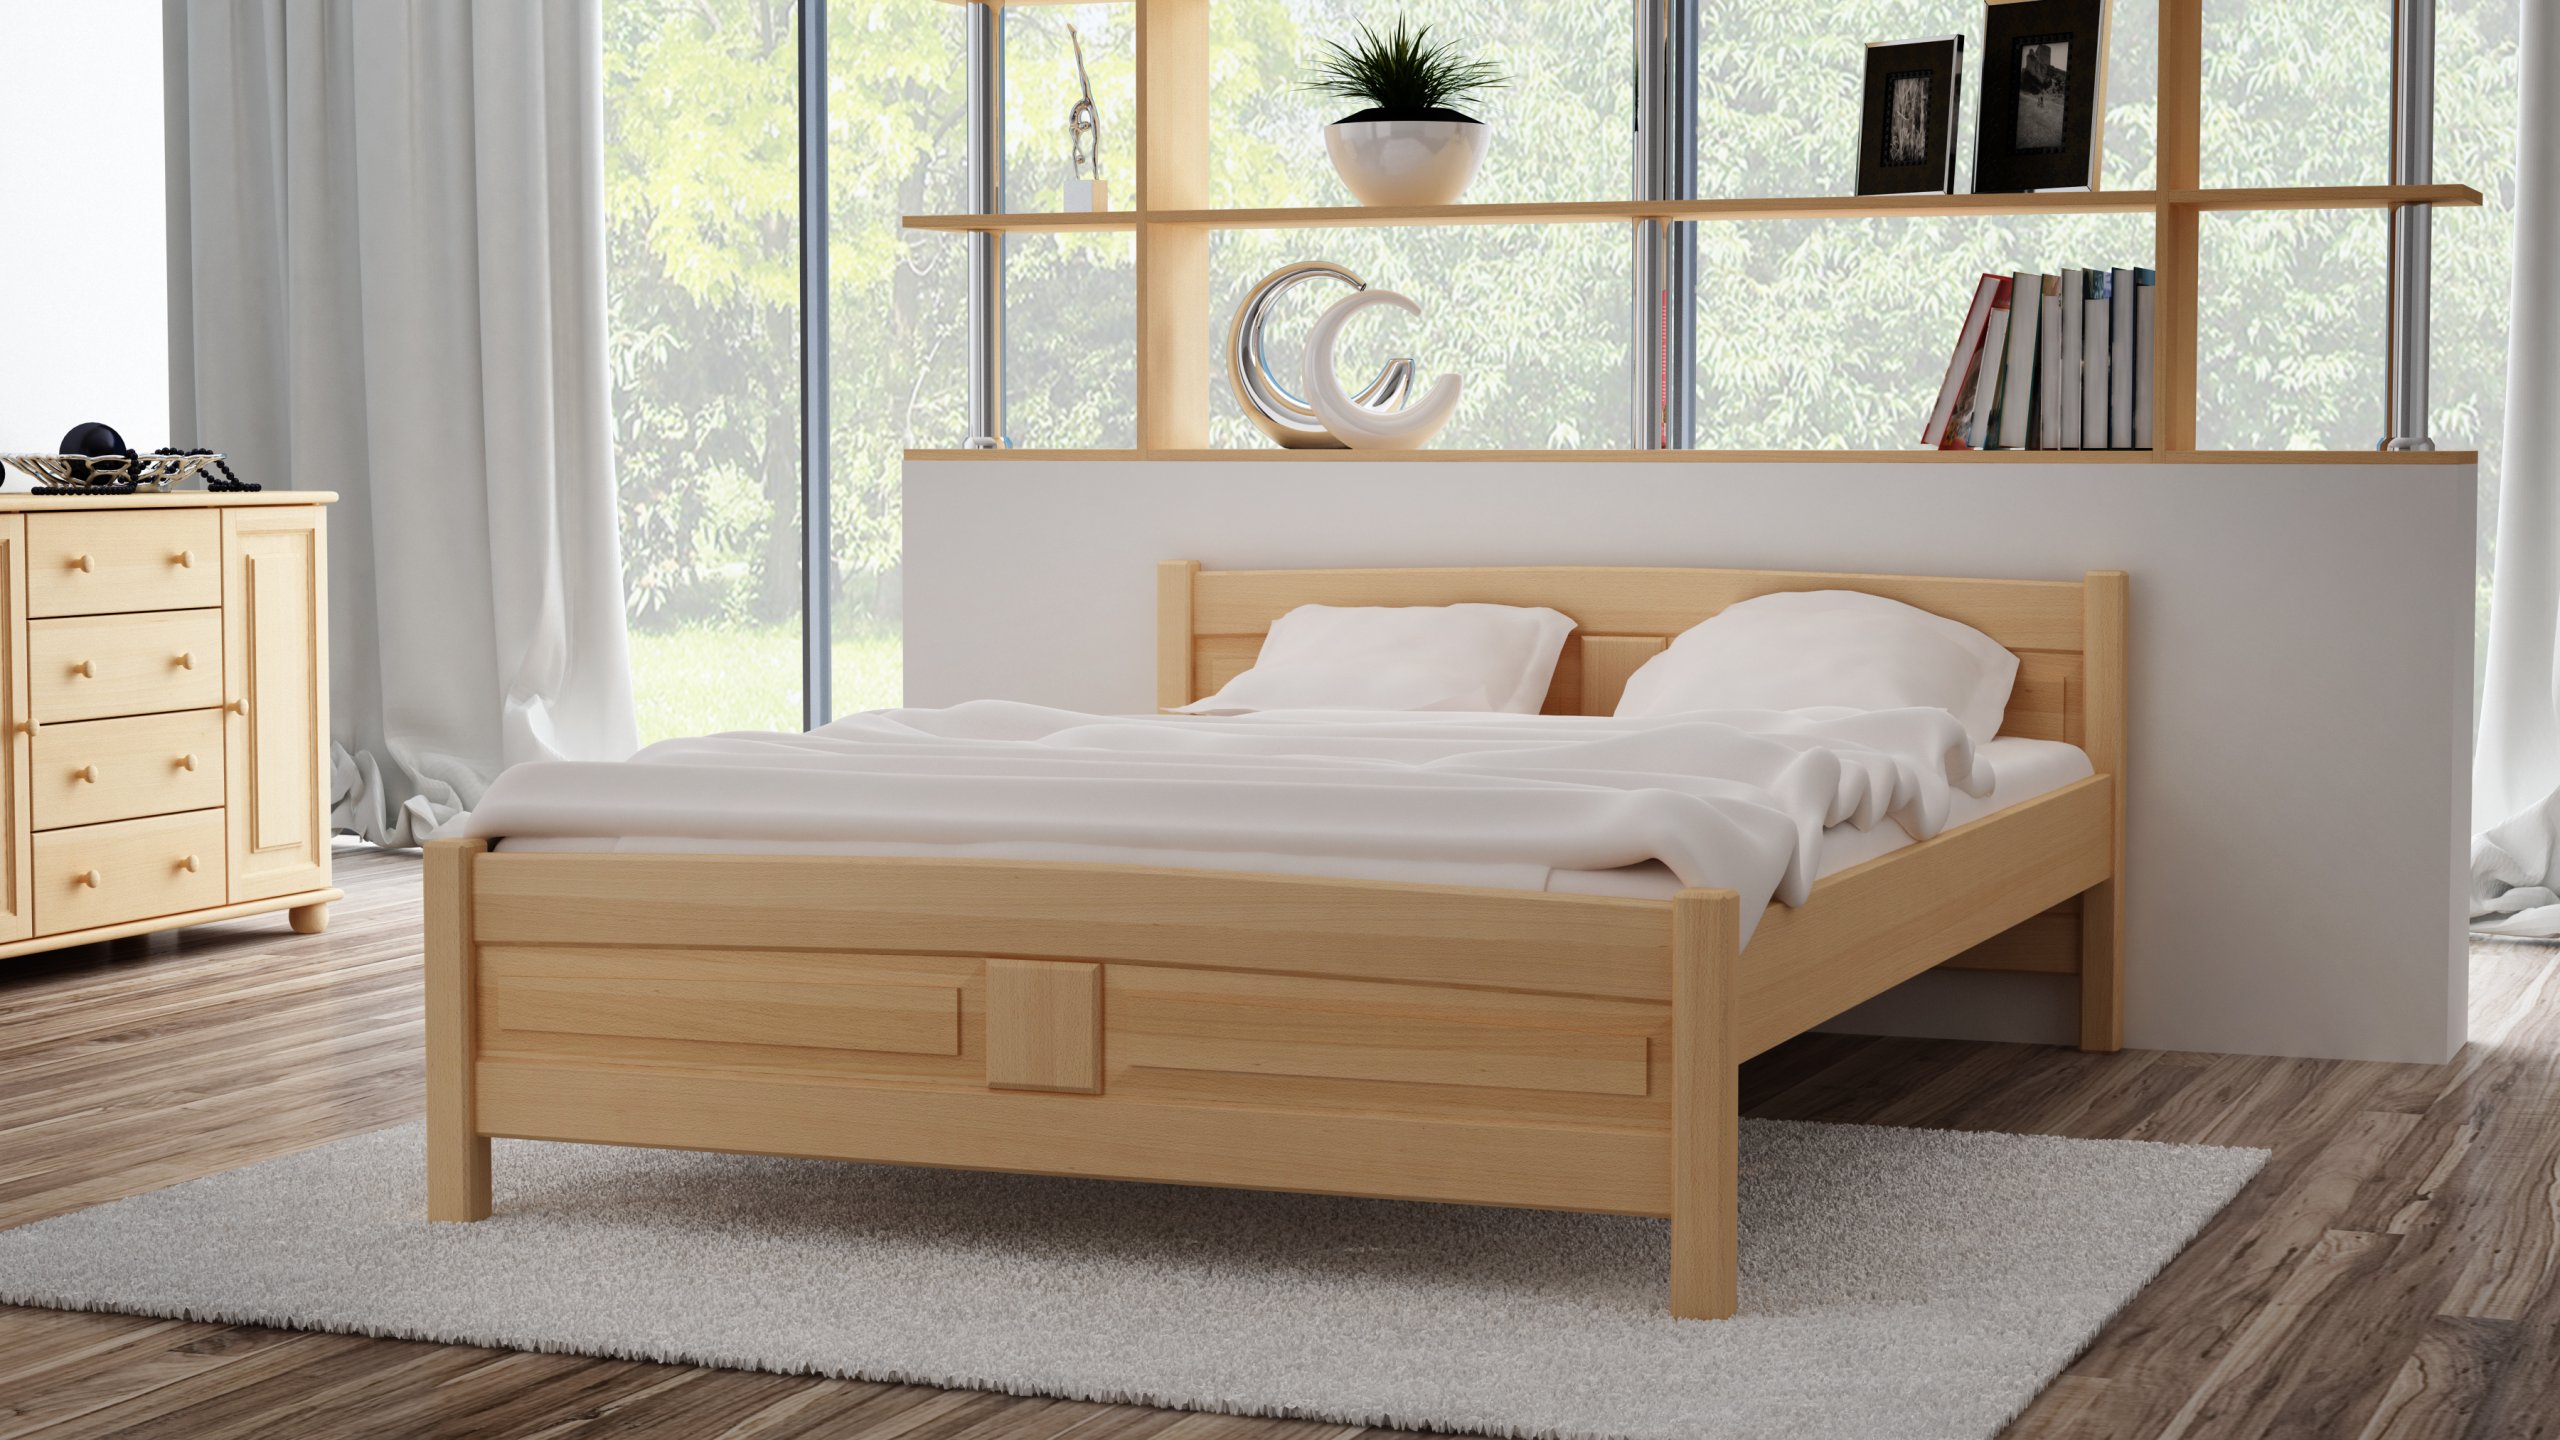 новая деревянная кровать скрипит